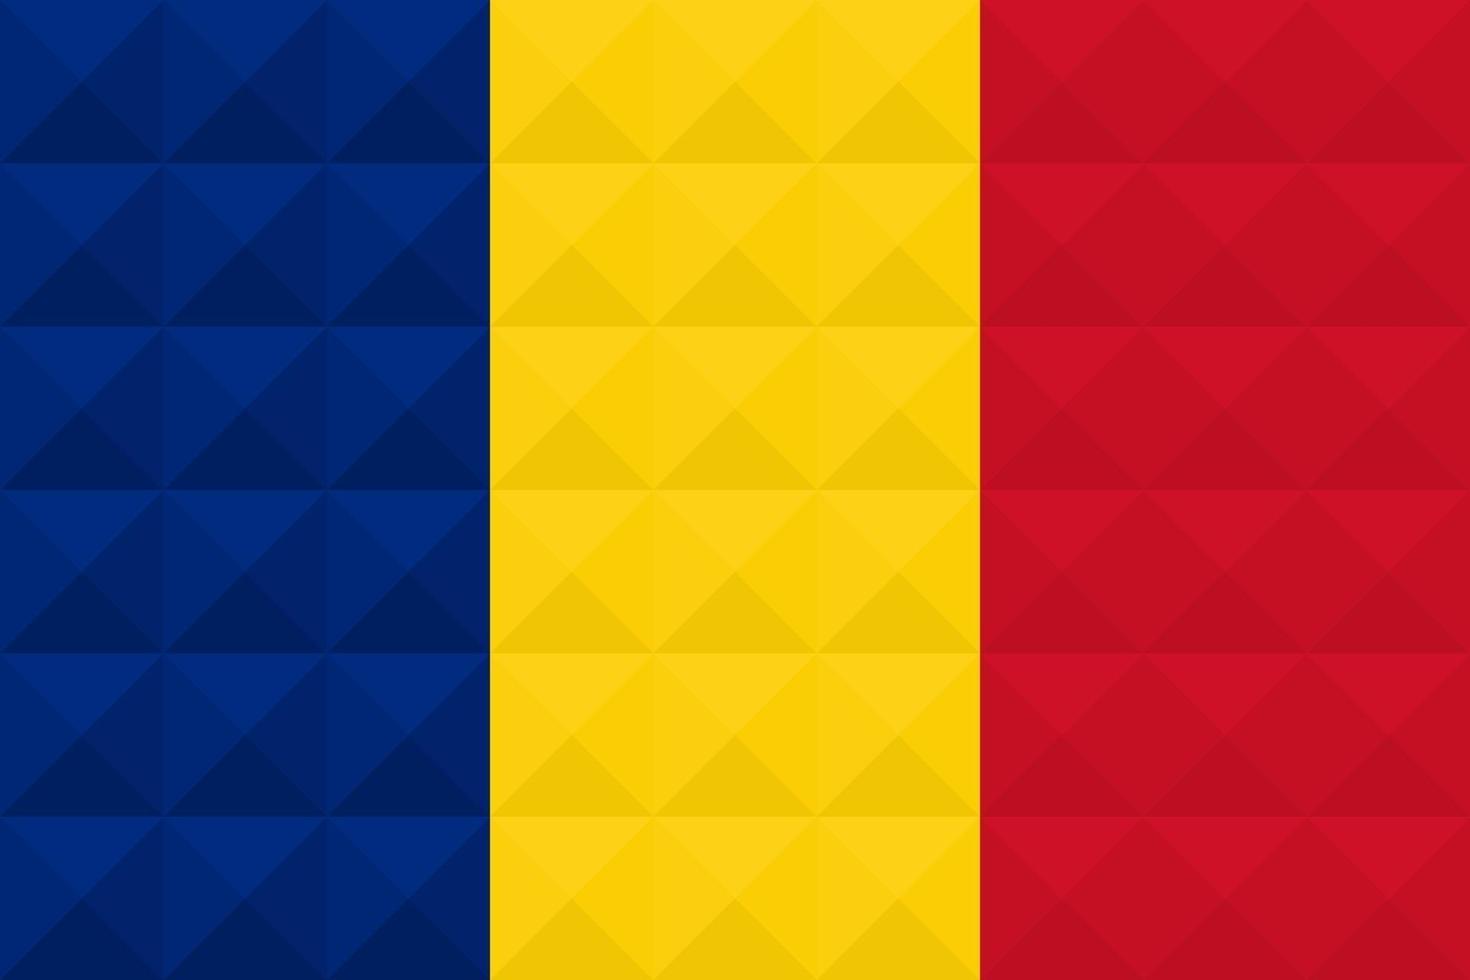 Rumäniens konstnärliga flagga med design för geometrisk konceptkonst vektor